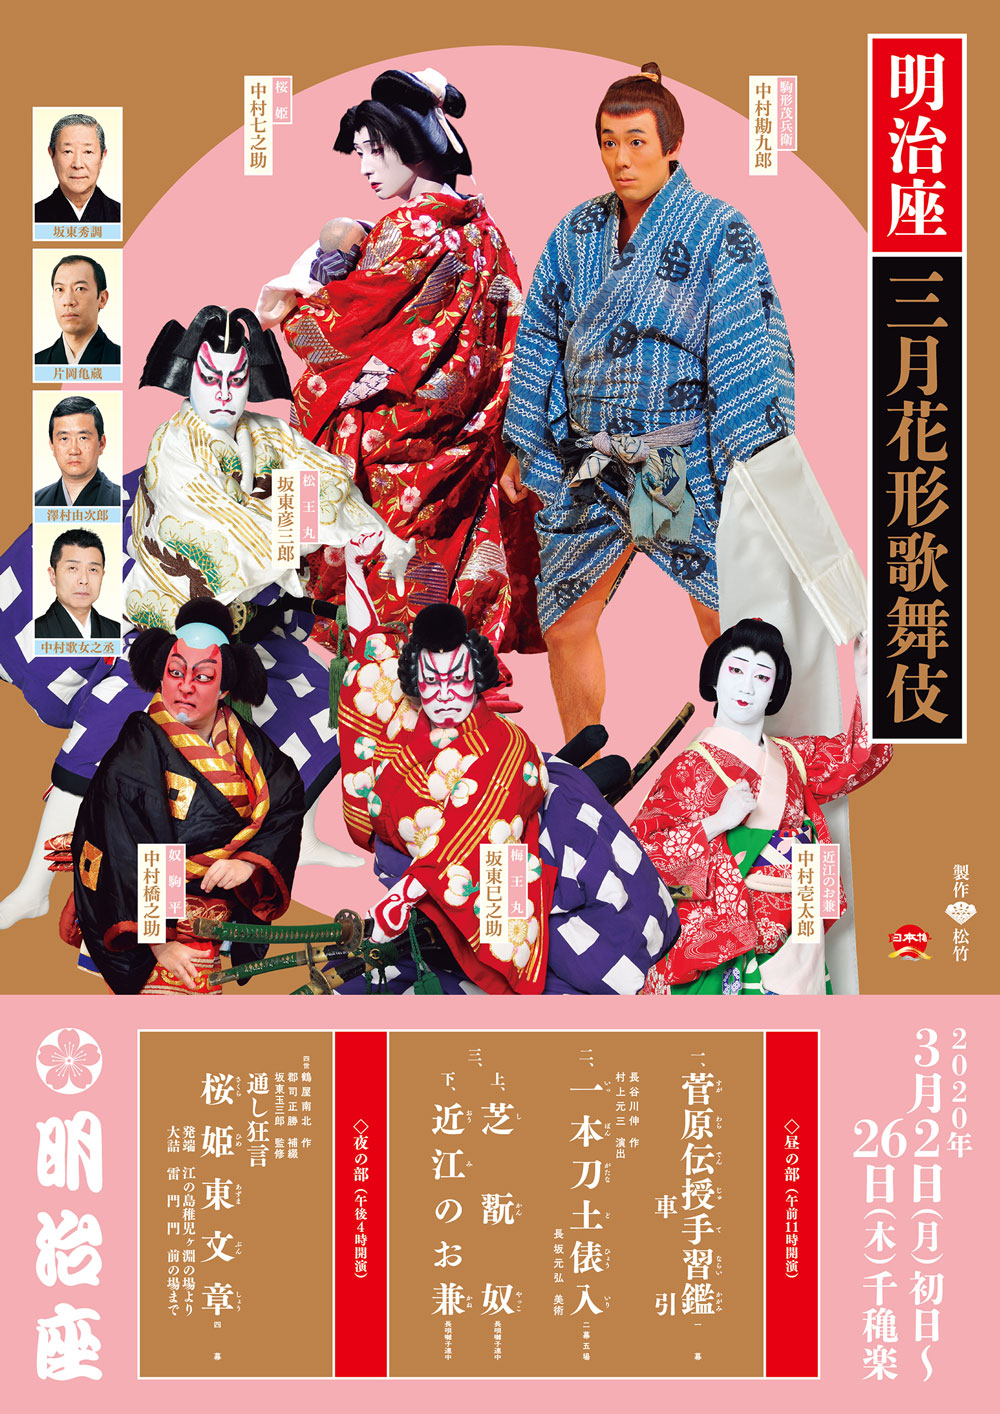 松竹チャンネルで、3月の歌舞伎公演関連動画、無料配信のお知らせ